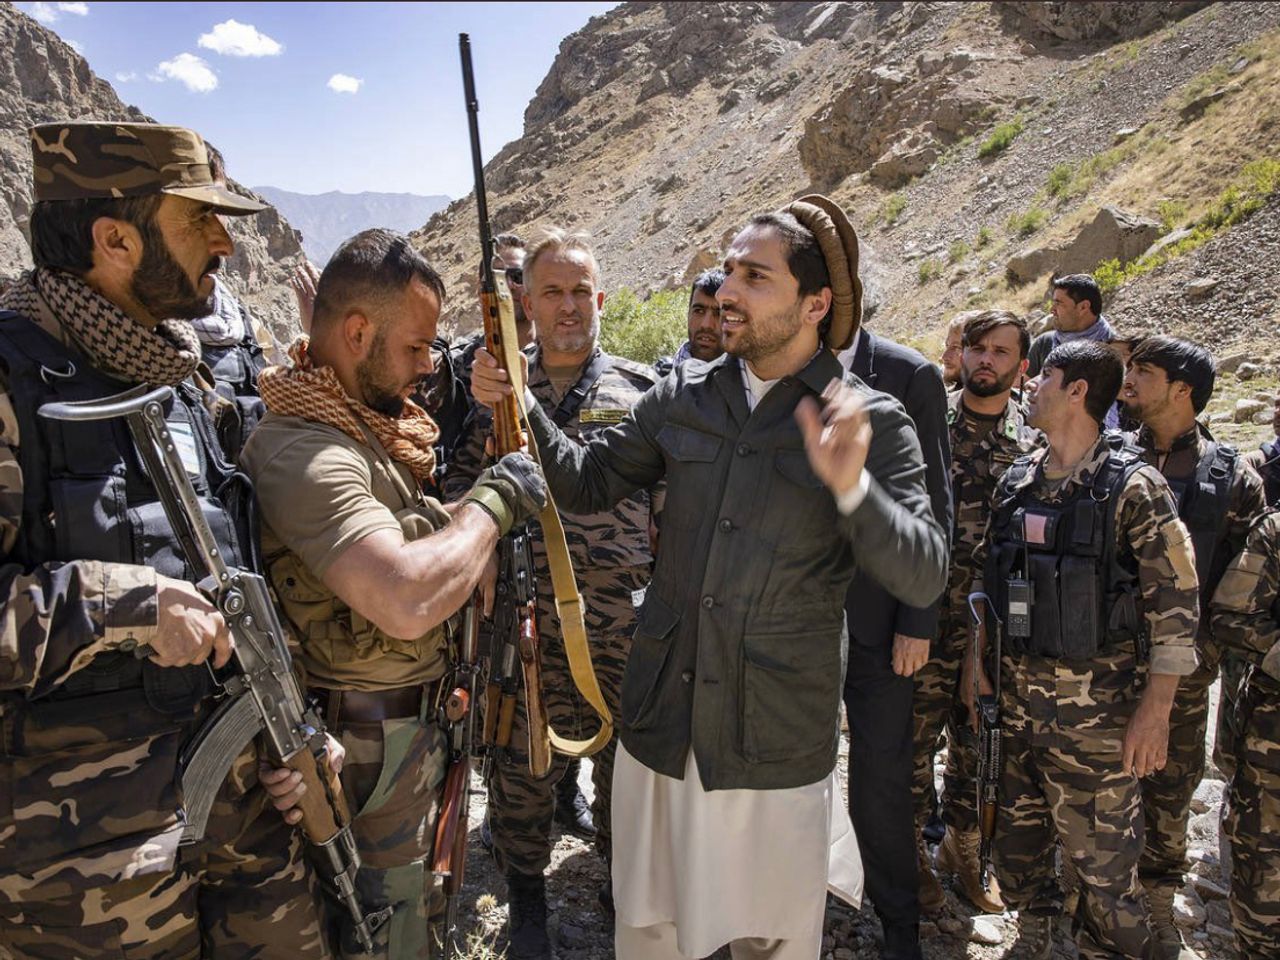 Oposisi Afghanistan 'Sangat Lemah' Meskipun Kemarahan Meningkat Terhadap Taliban